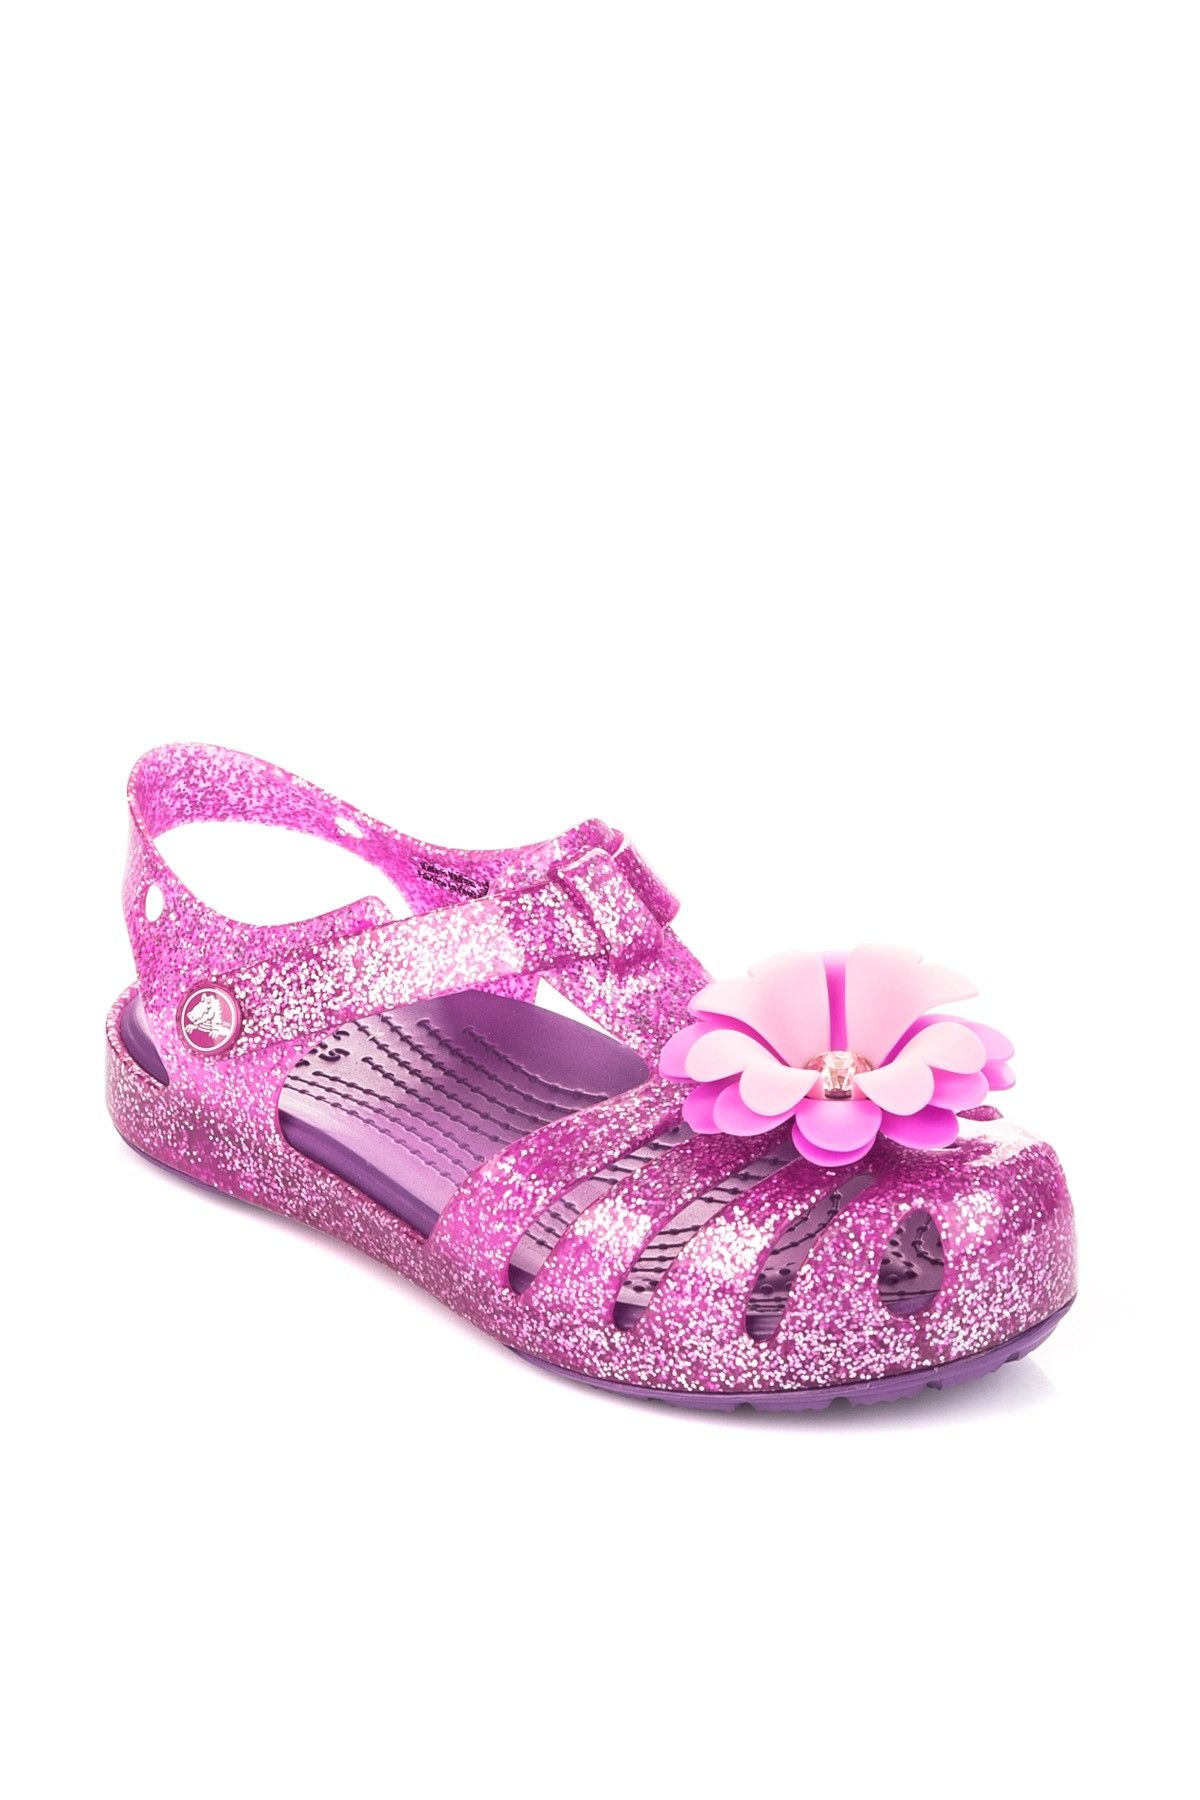 Crocs Mor Kız Çocuk Sandalet 204529